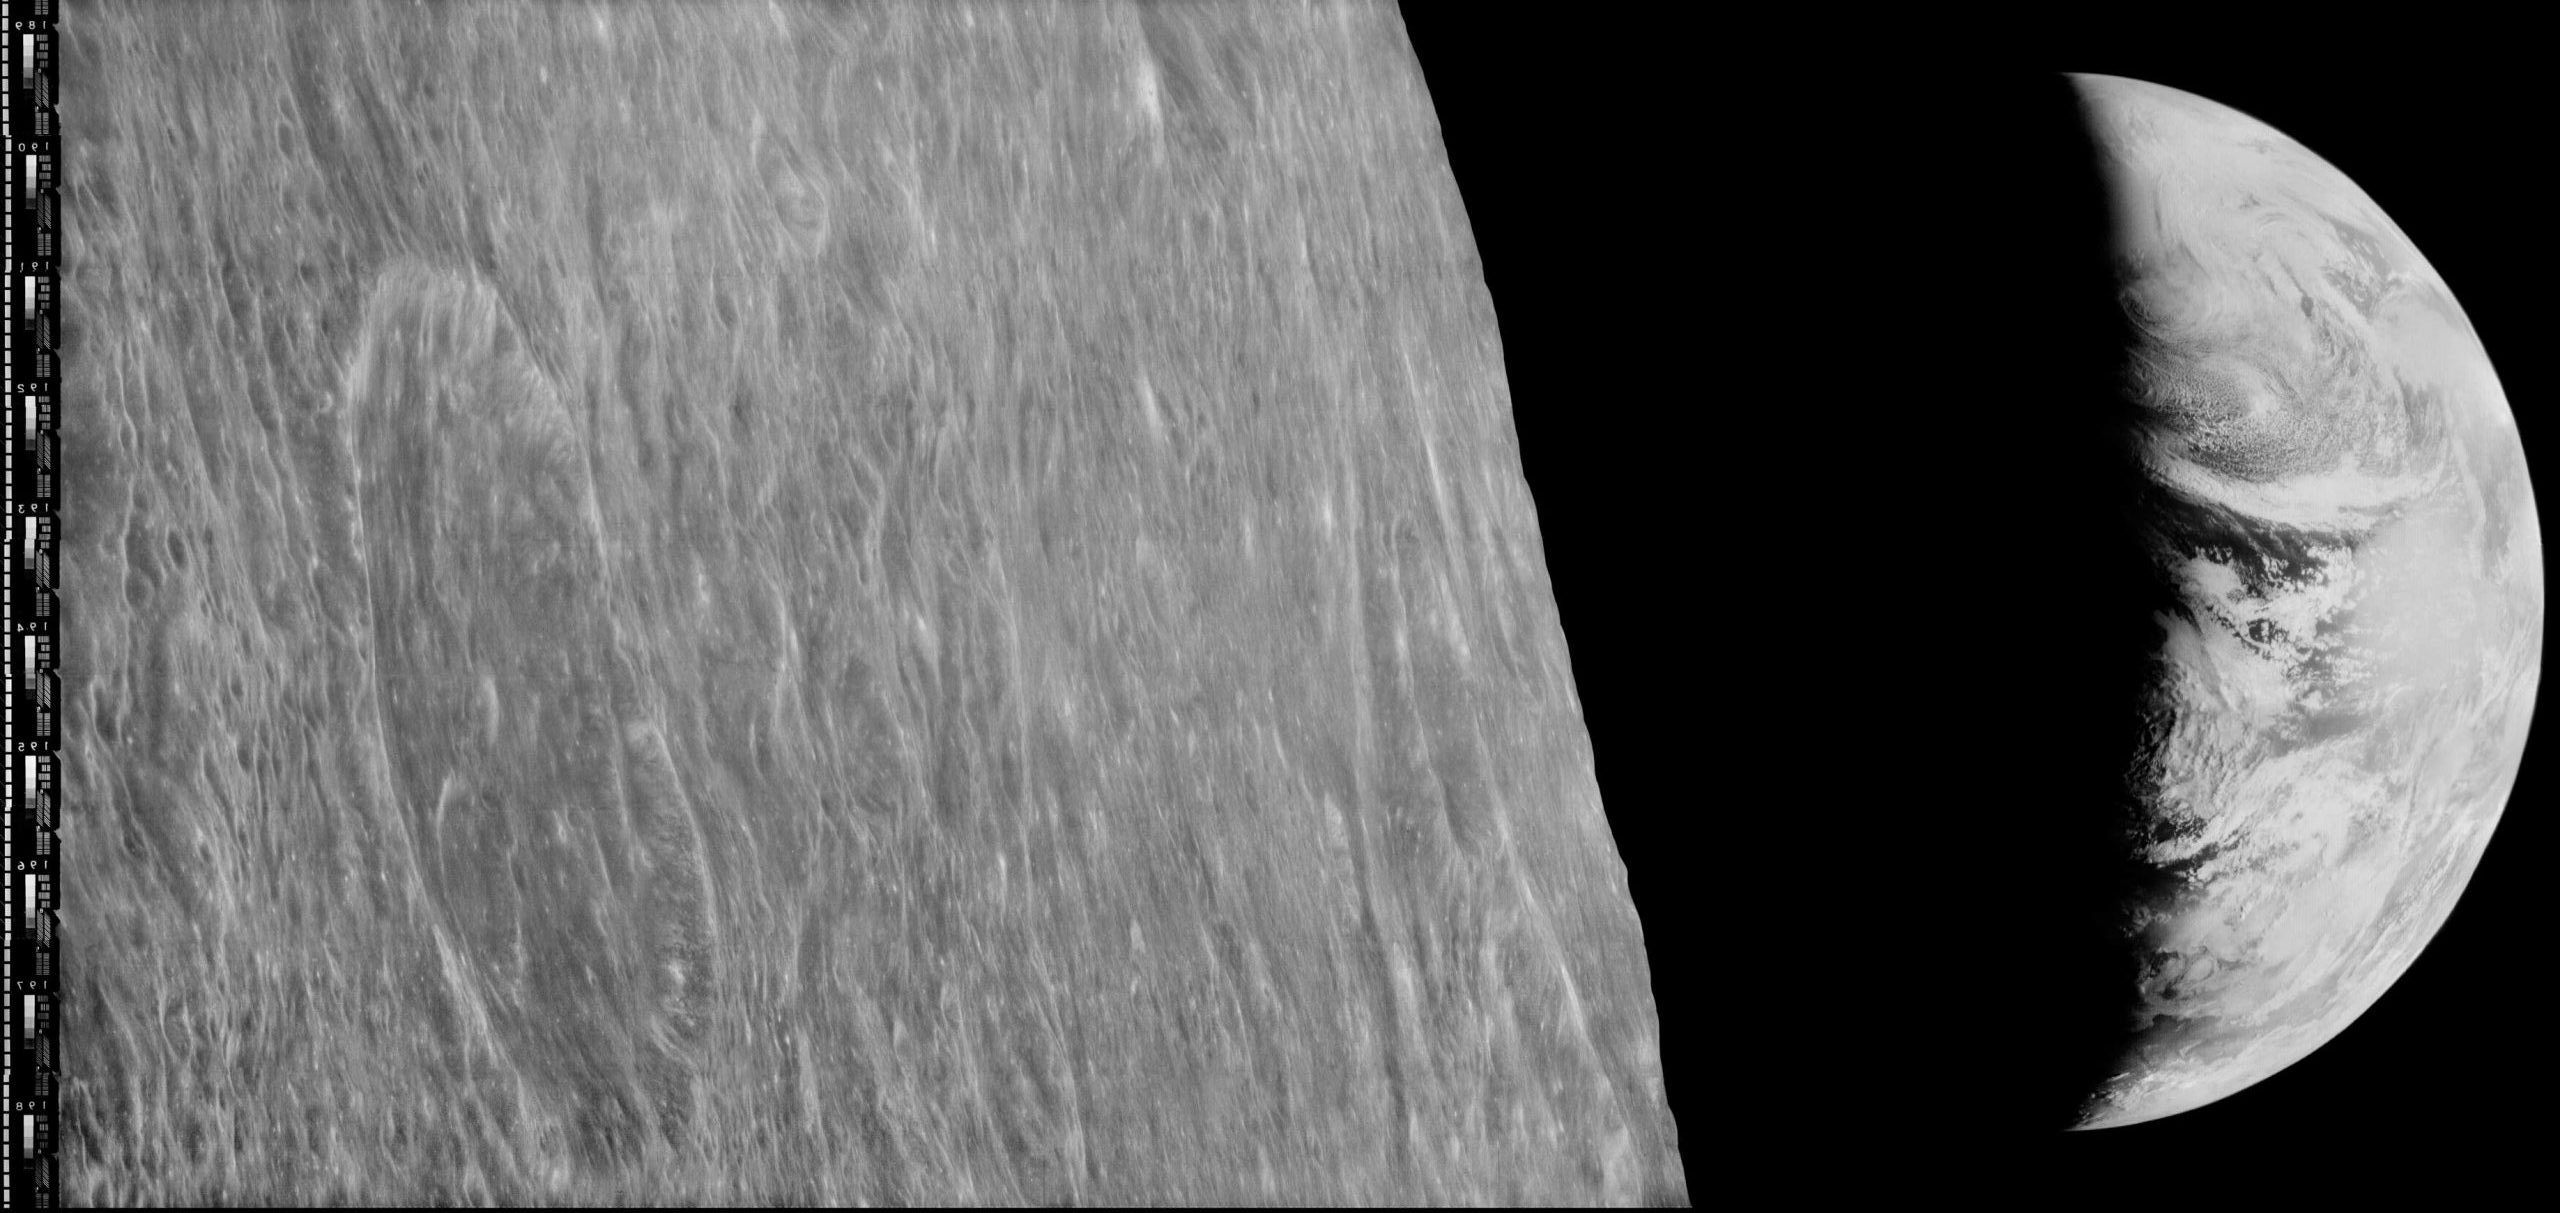 Ziemia wschodząca nad horyzontem Księżyca (tzw. Earthrise, wschód Ziemi). Obraz zrekonstruowany z taśm magnetycznych w ramach inicjatywy LOIRP. Fot. NASA